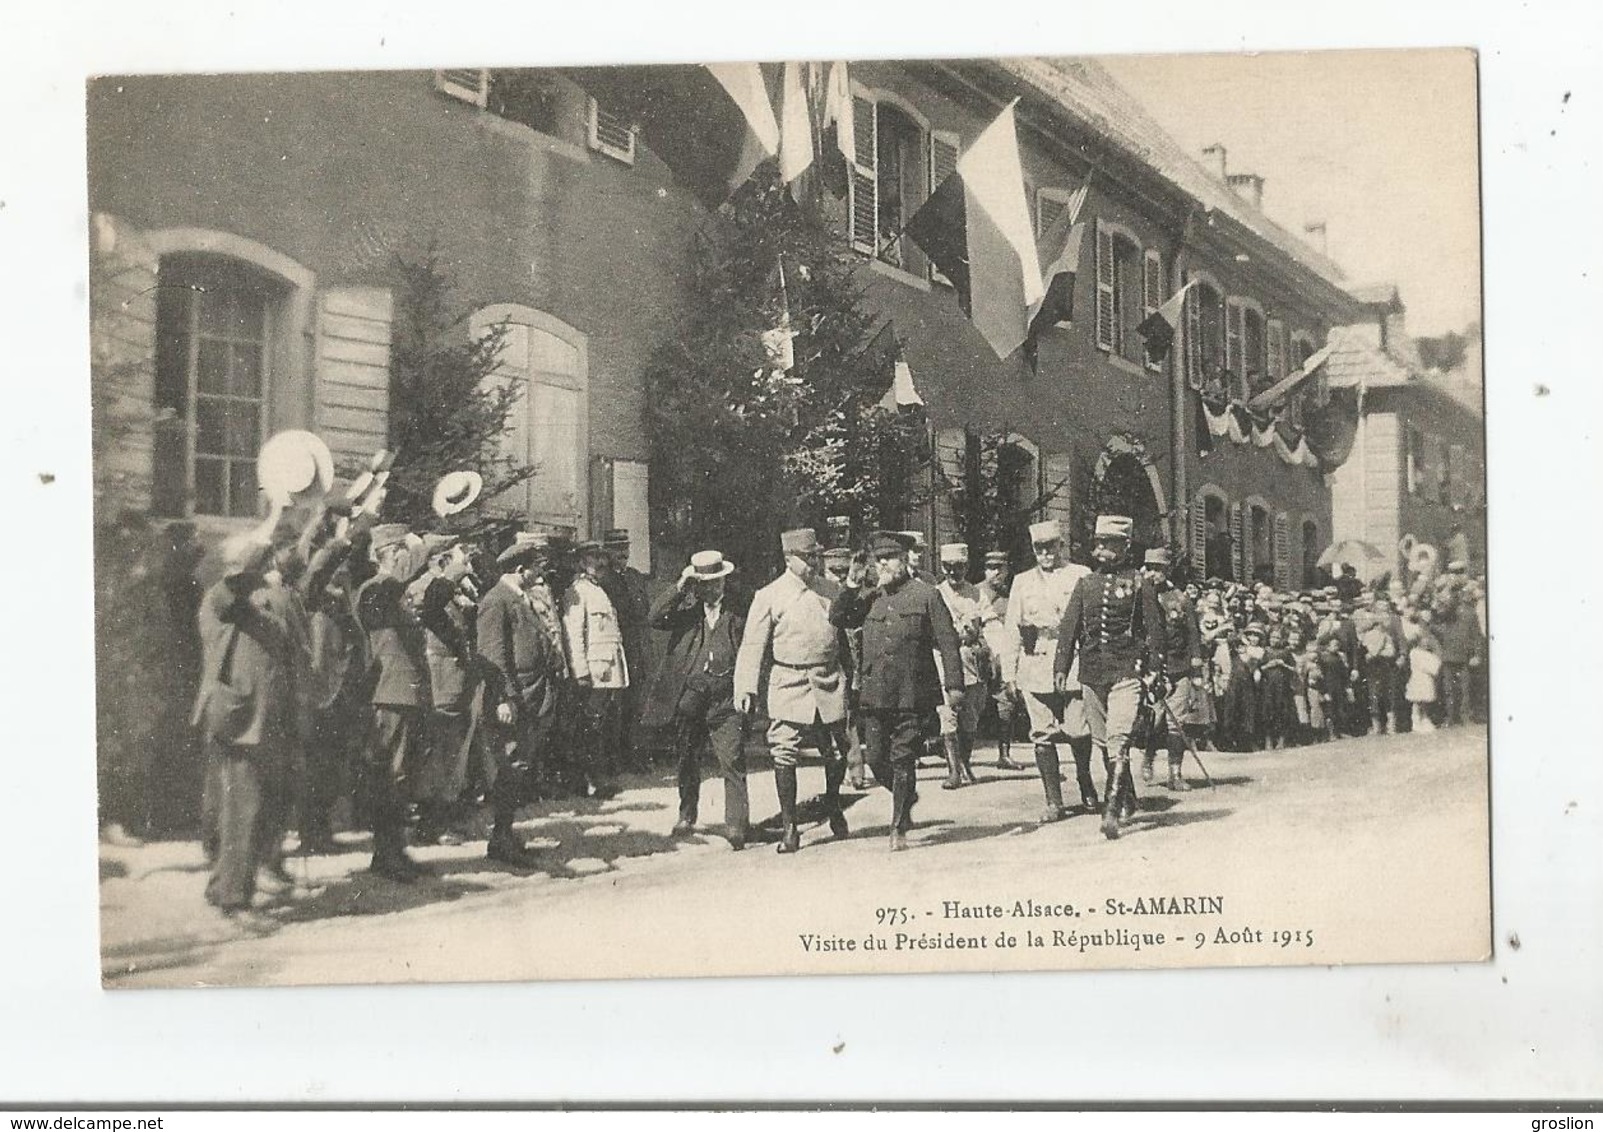 SAINT AMARIN 975 HAUTE ALSACE VISITE DU PRESIDENT DE LA REPUBLIQUE 9 AOUT 1915 - Saint Amarin